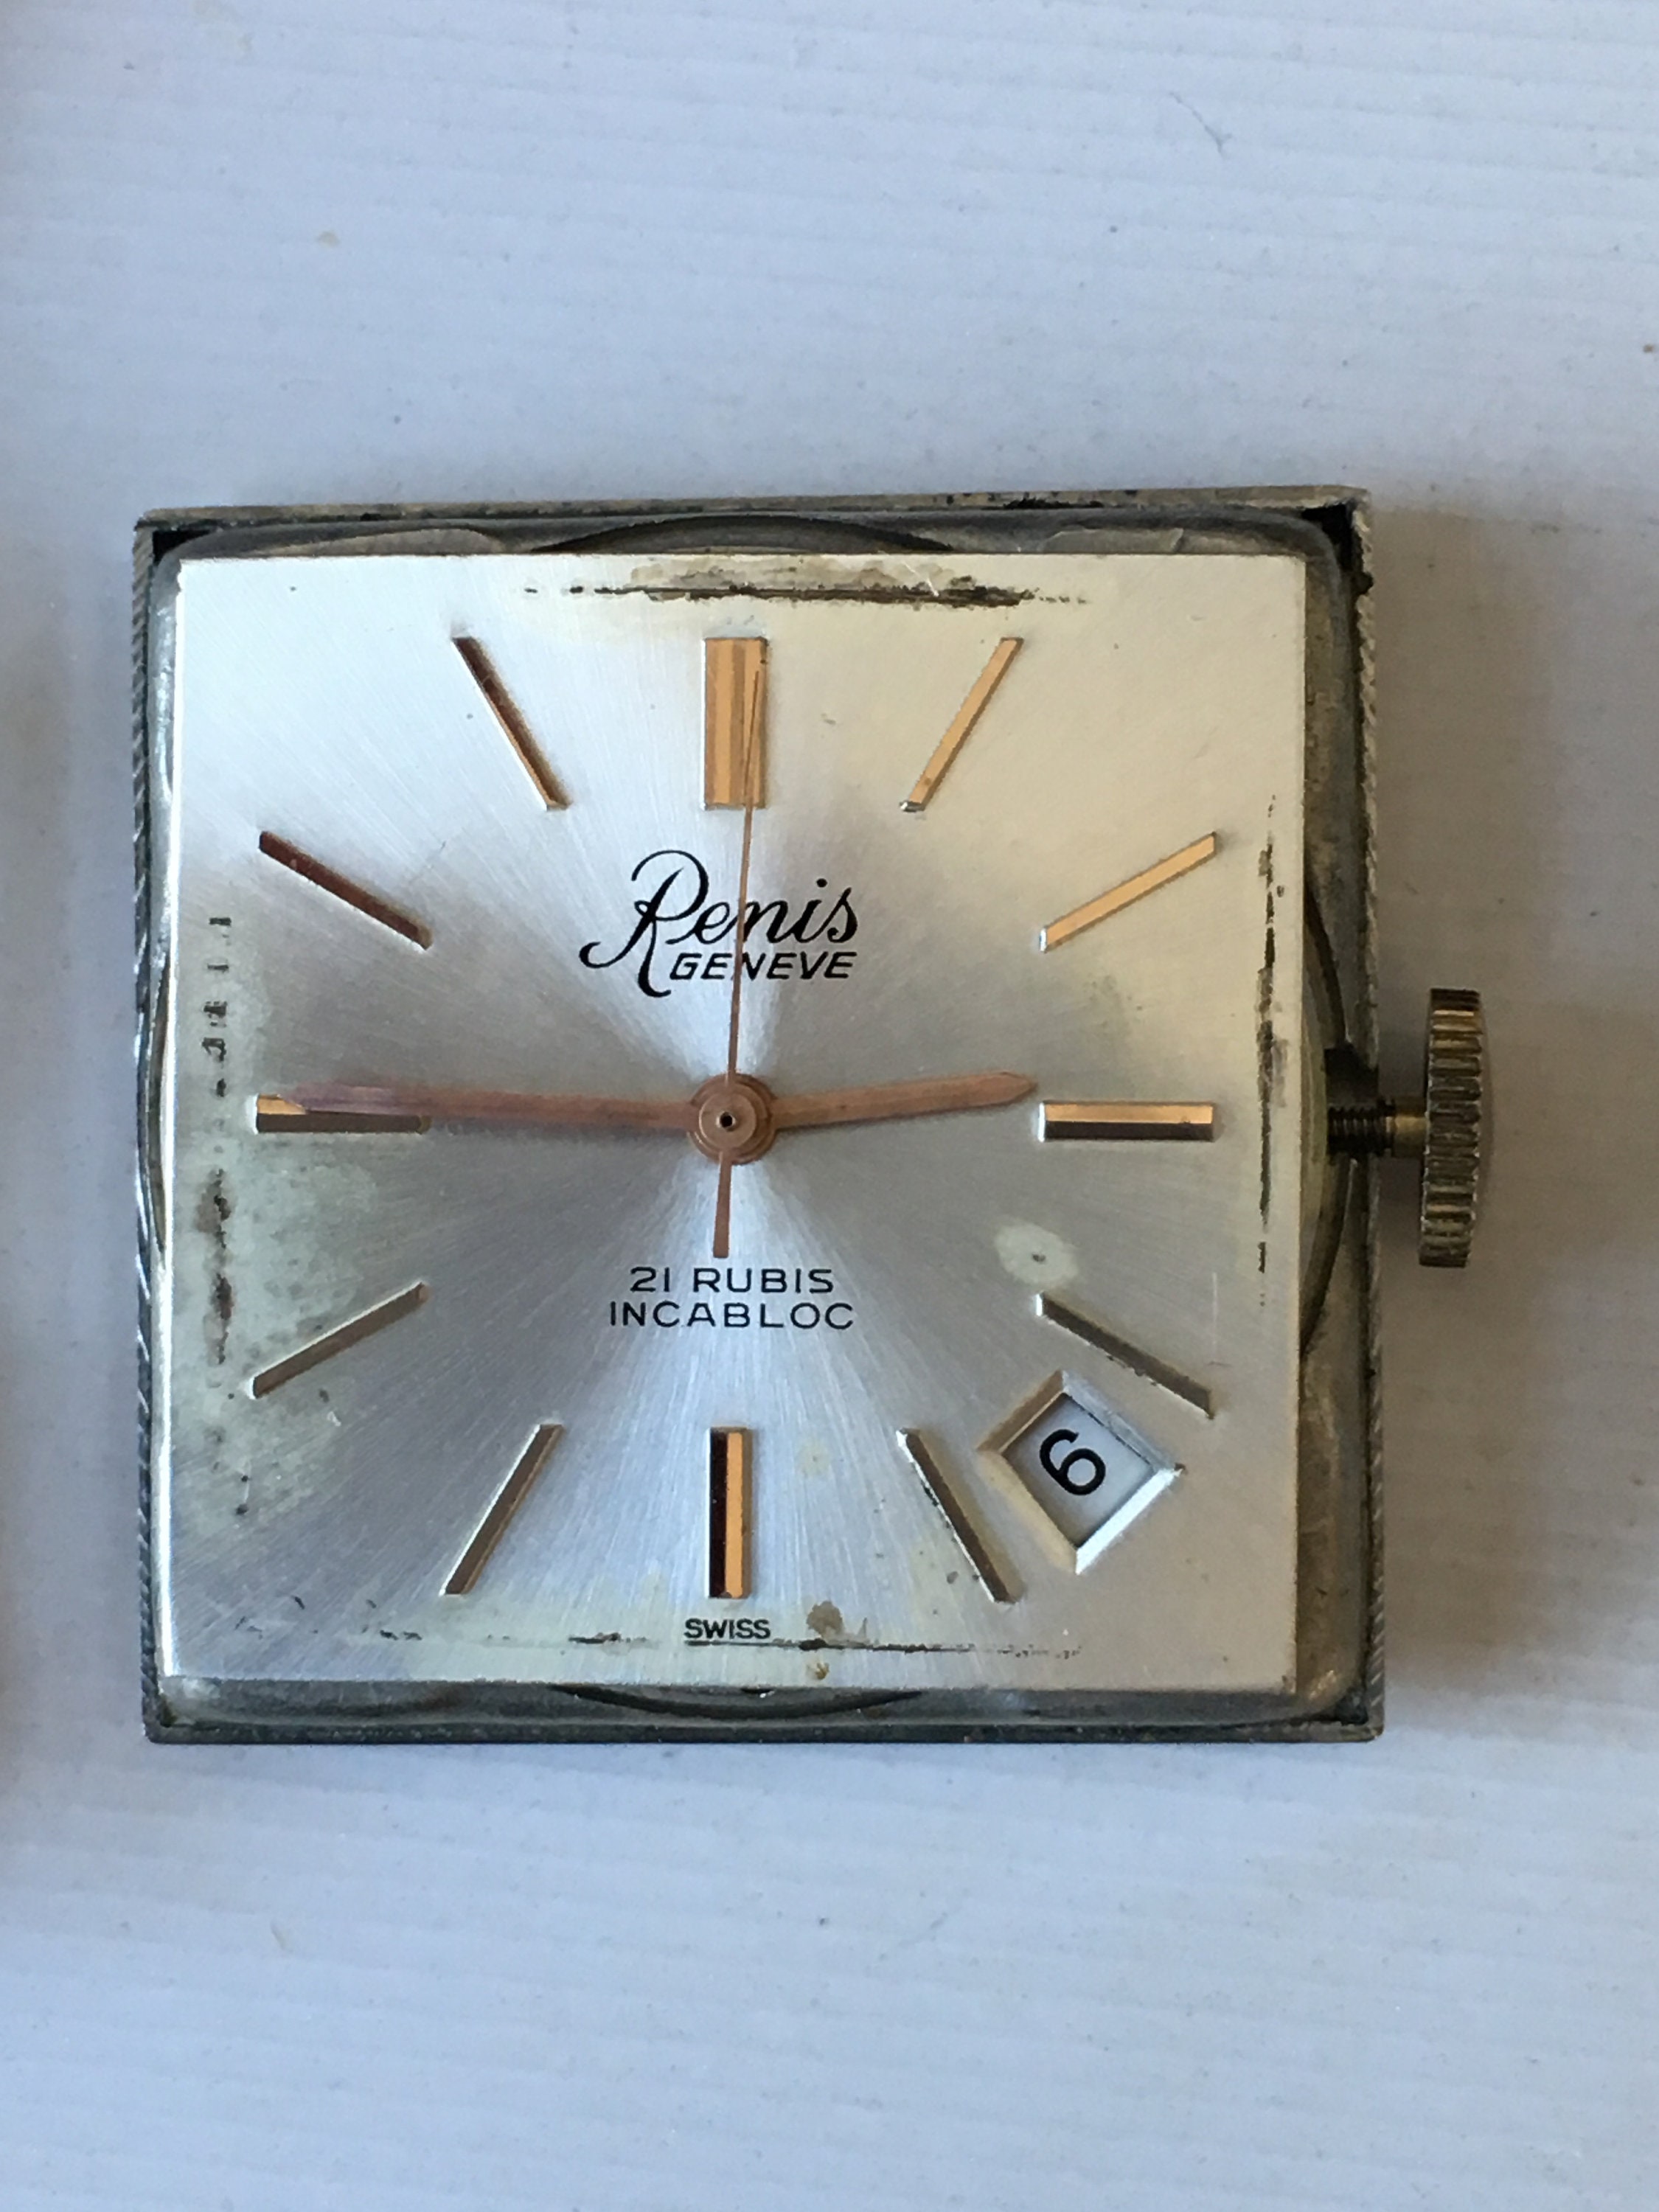 Authentic Vintage Renis Geneve Watch 73-4N 21 Rubies C 50s 60s | Etsy UK